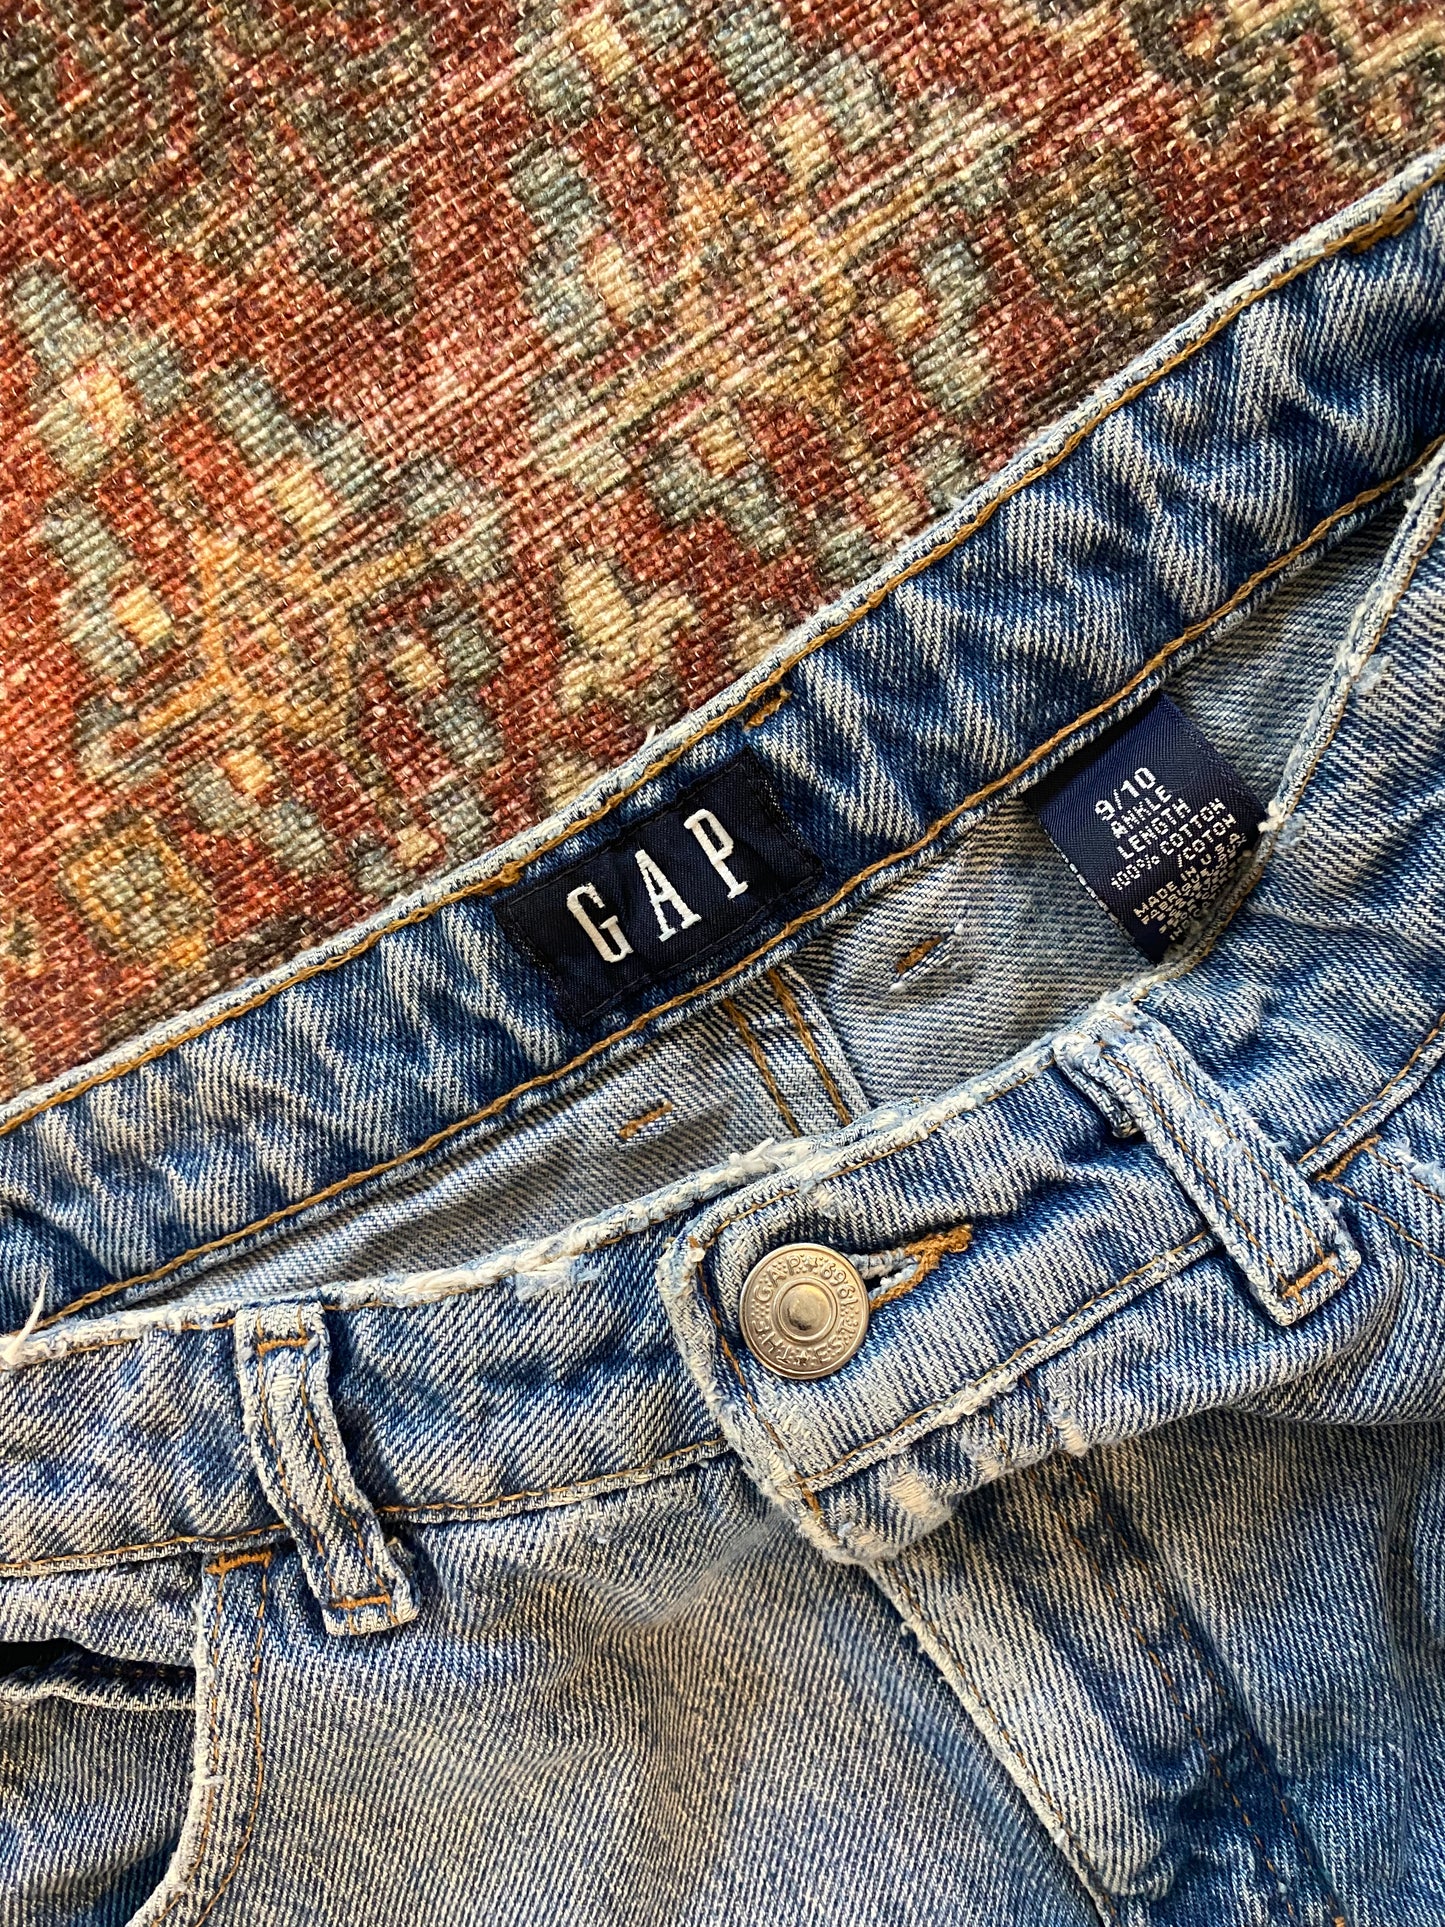 Vintage Gap Jeans – never ending boutique